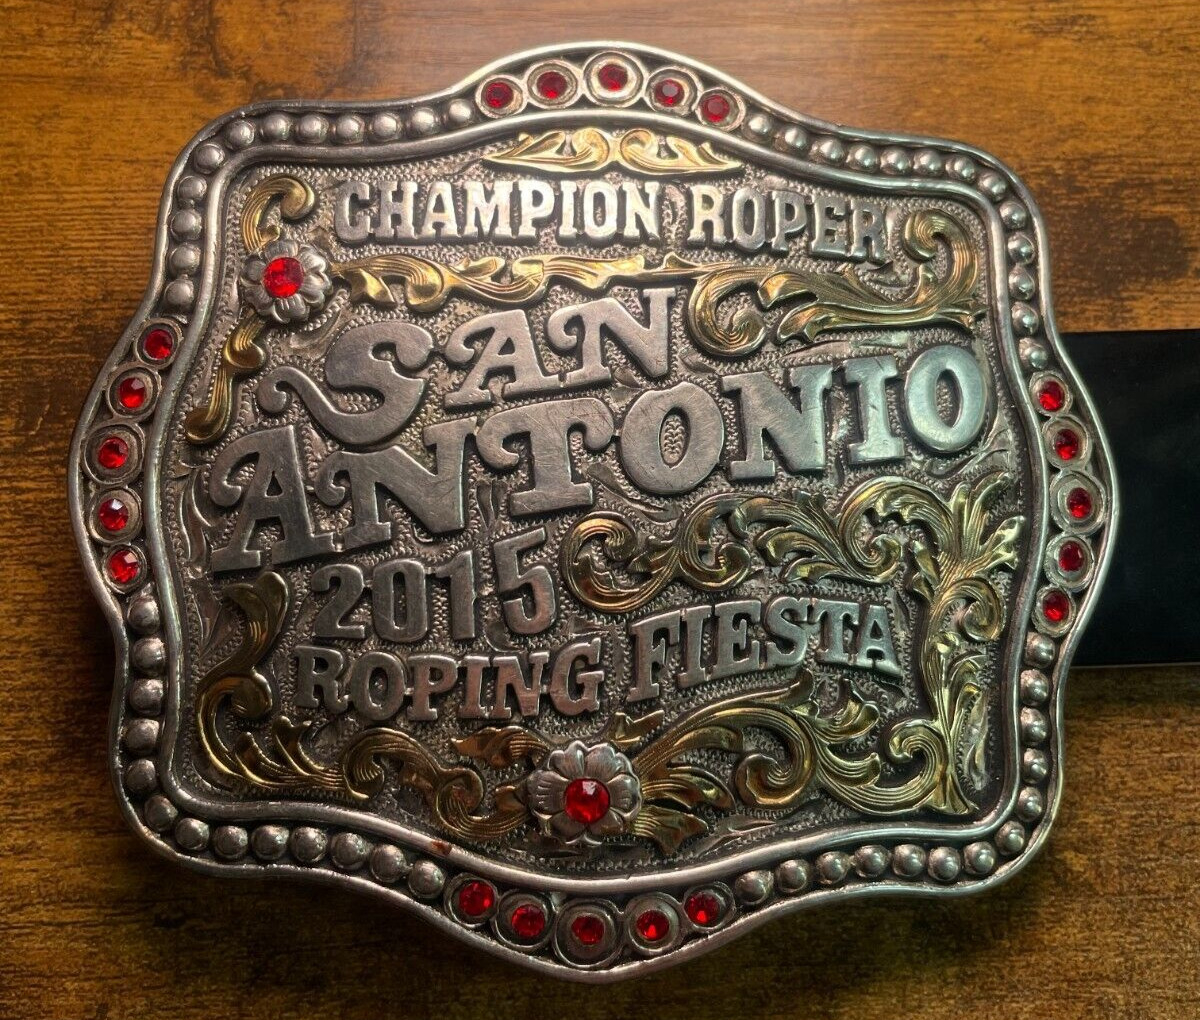 2015 San Antonio Rodeo Champion Roper Belt Buckle Tres Rios 80% Silver